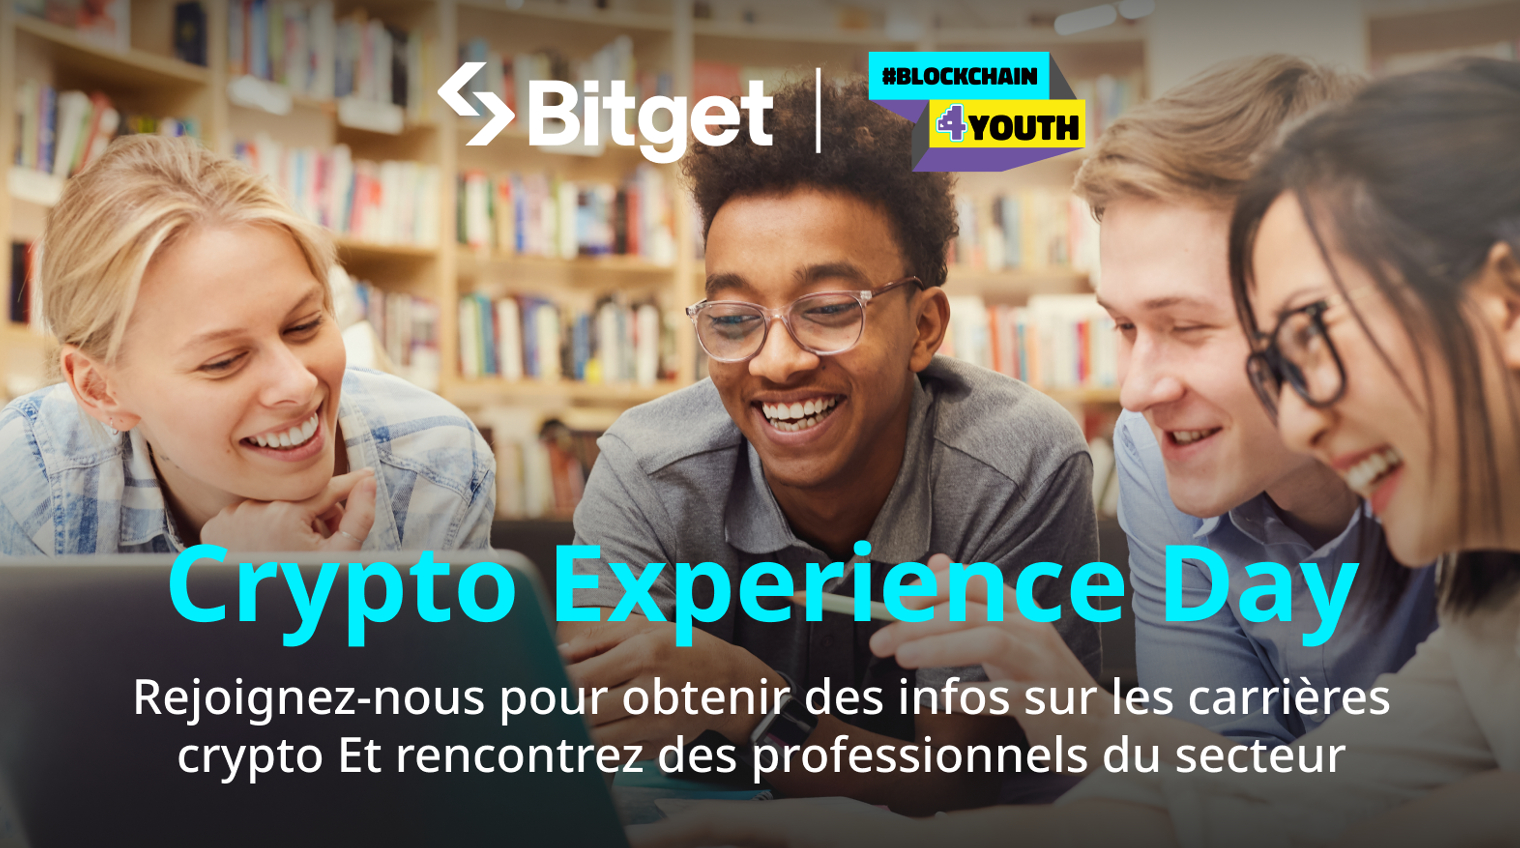 Bitget organise son premier “Crypto Experience Day” afin d'éveiller l'intérêt de la génération Z pour les cryptomonnaies